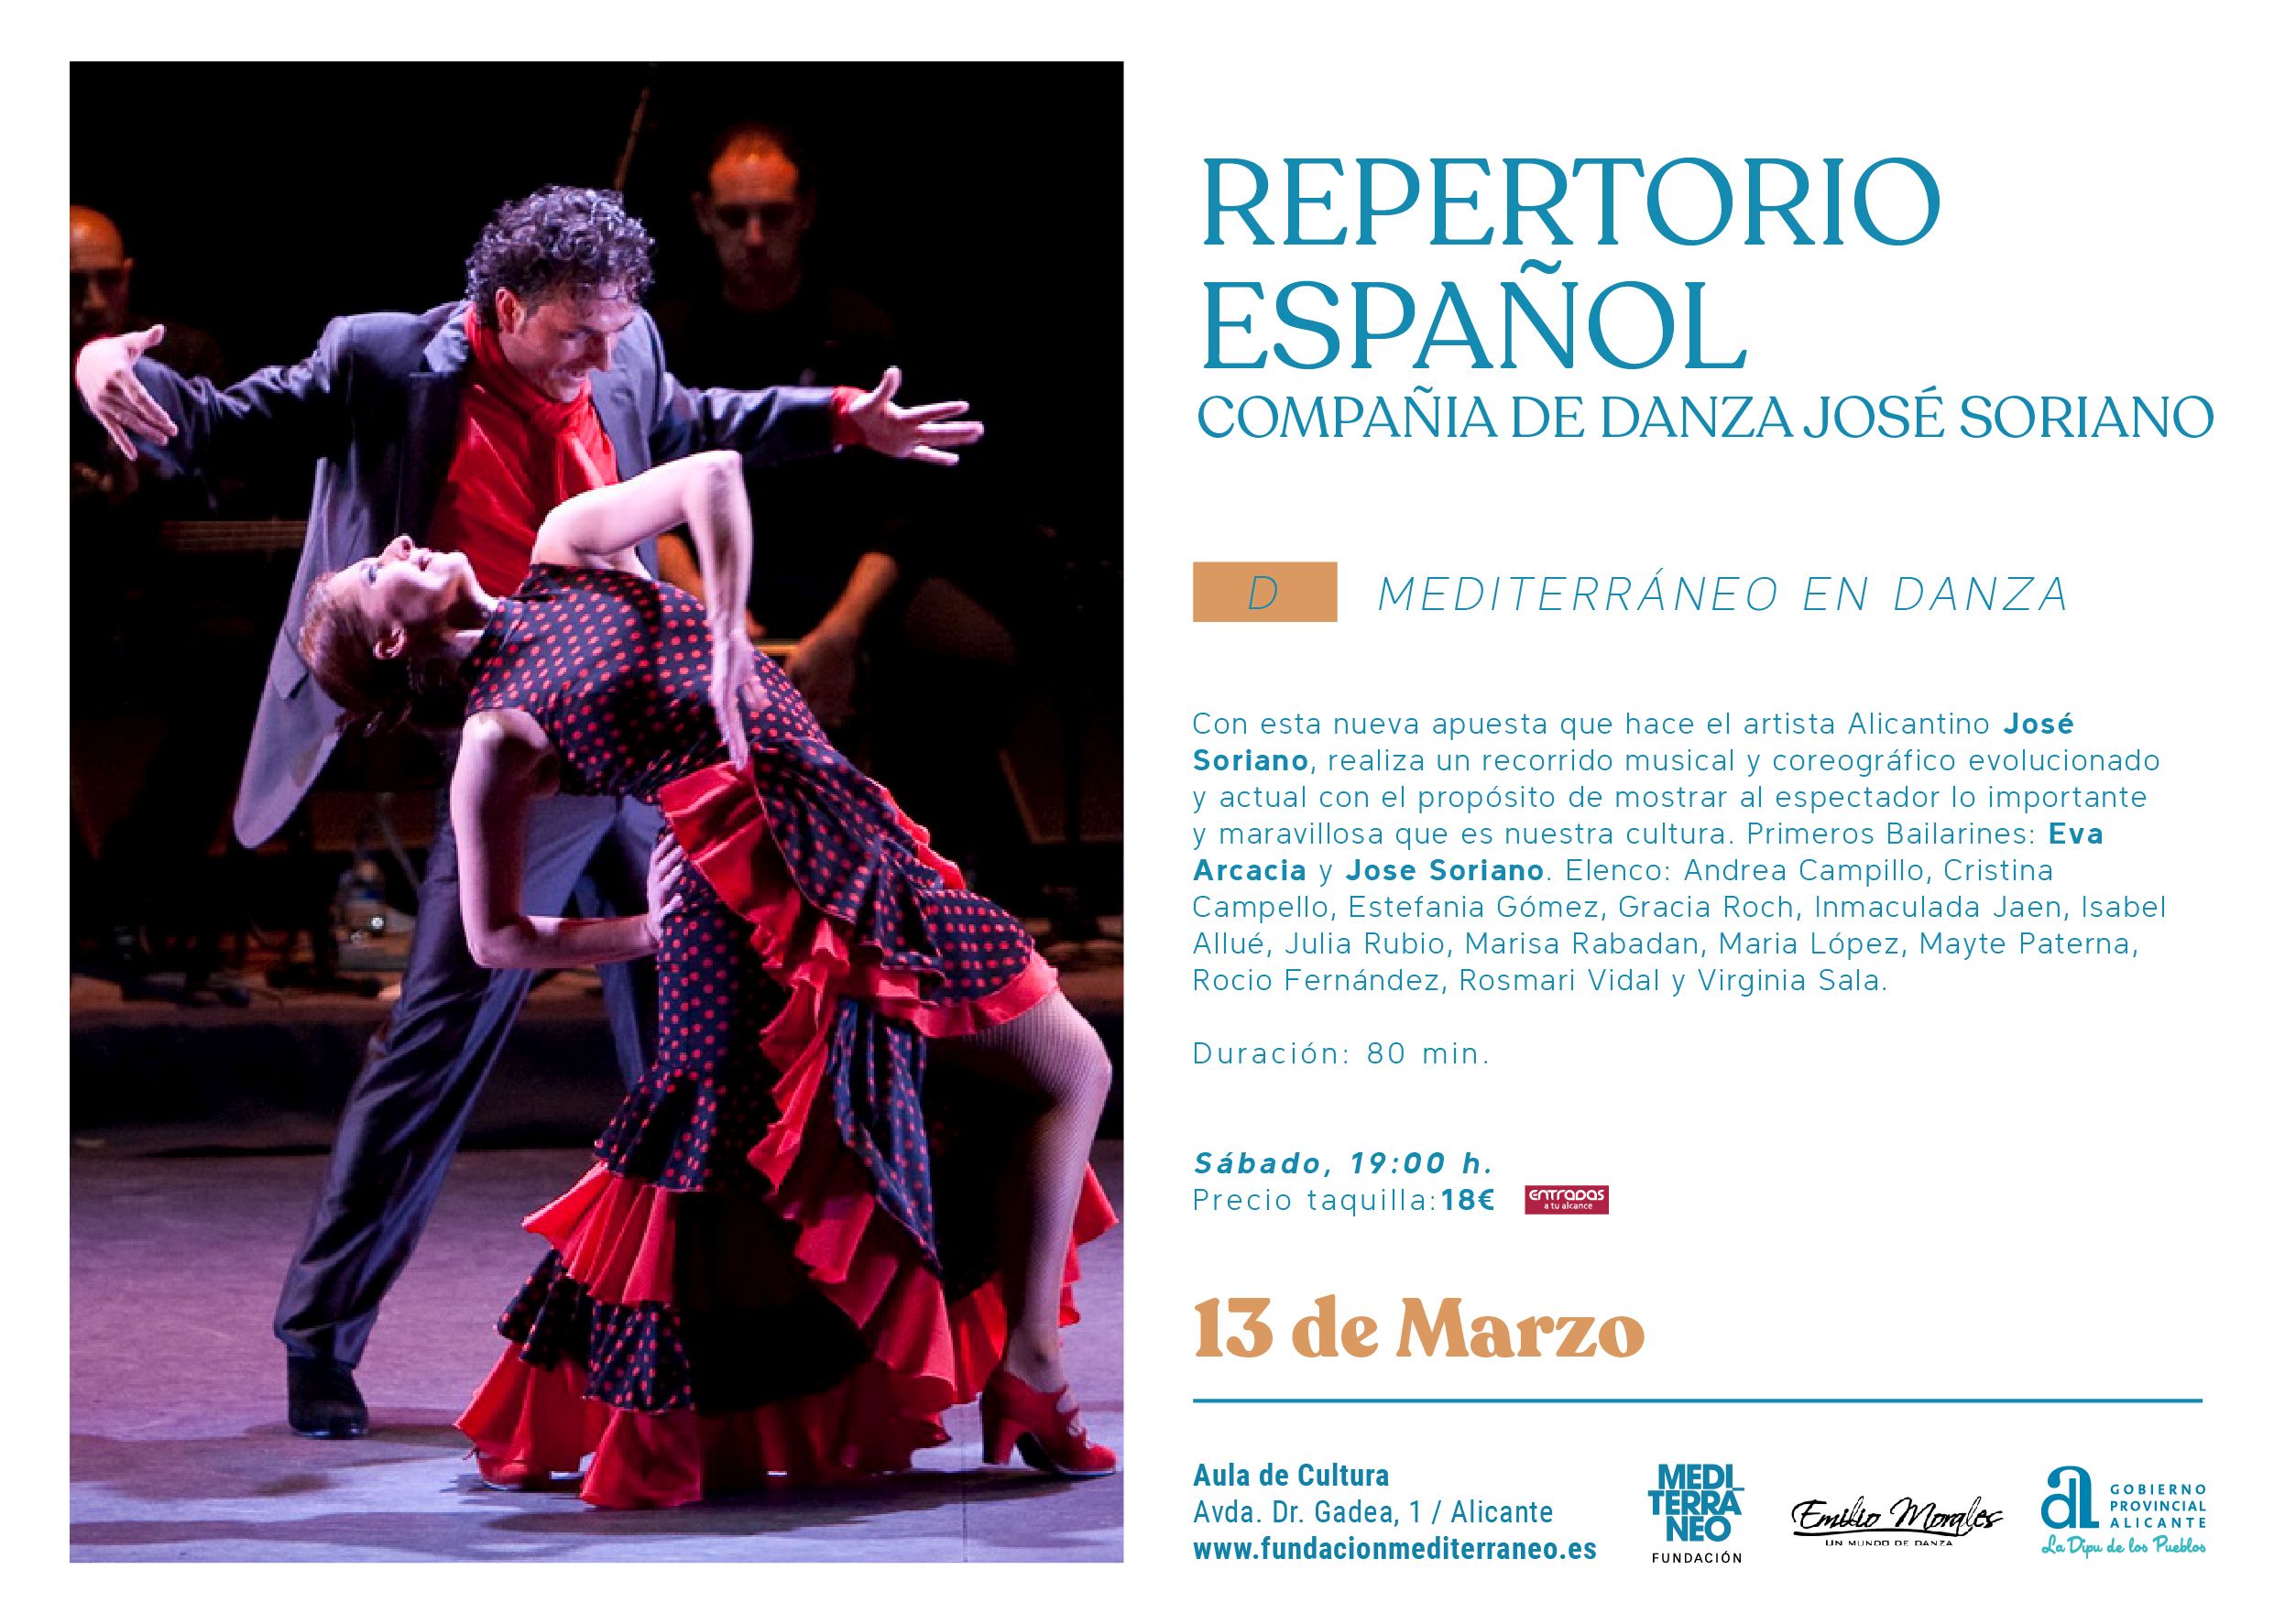 mediterraneo-en-danza-repertorio-espanol-compania-de-danza-jose--602a9dce50b6a.jpeg